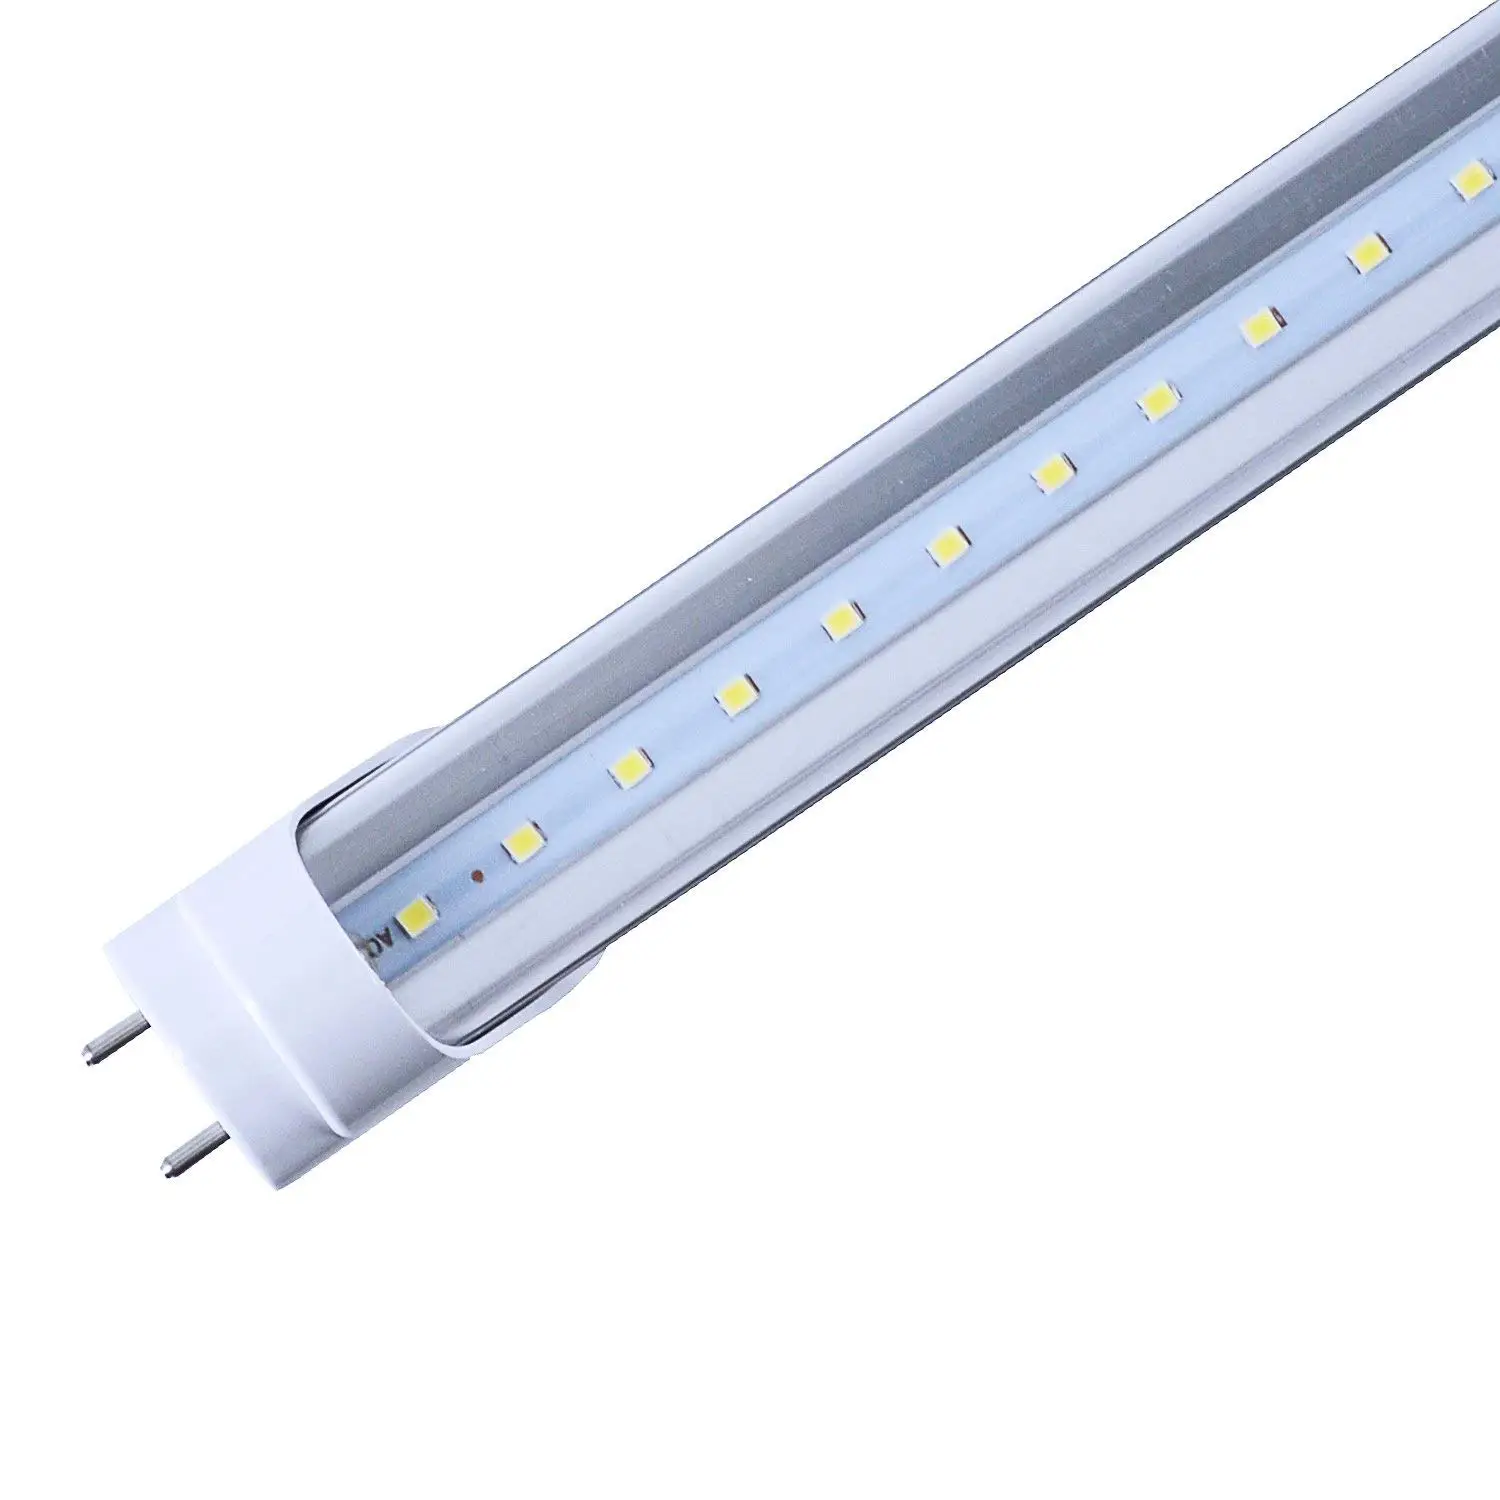 Buy 4ft T8 Led Light Tube Cnsunway Lighting 22w 45w Fluorescent